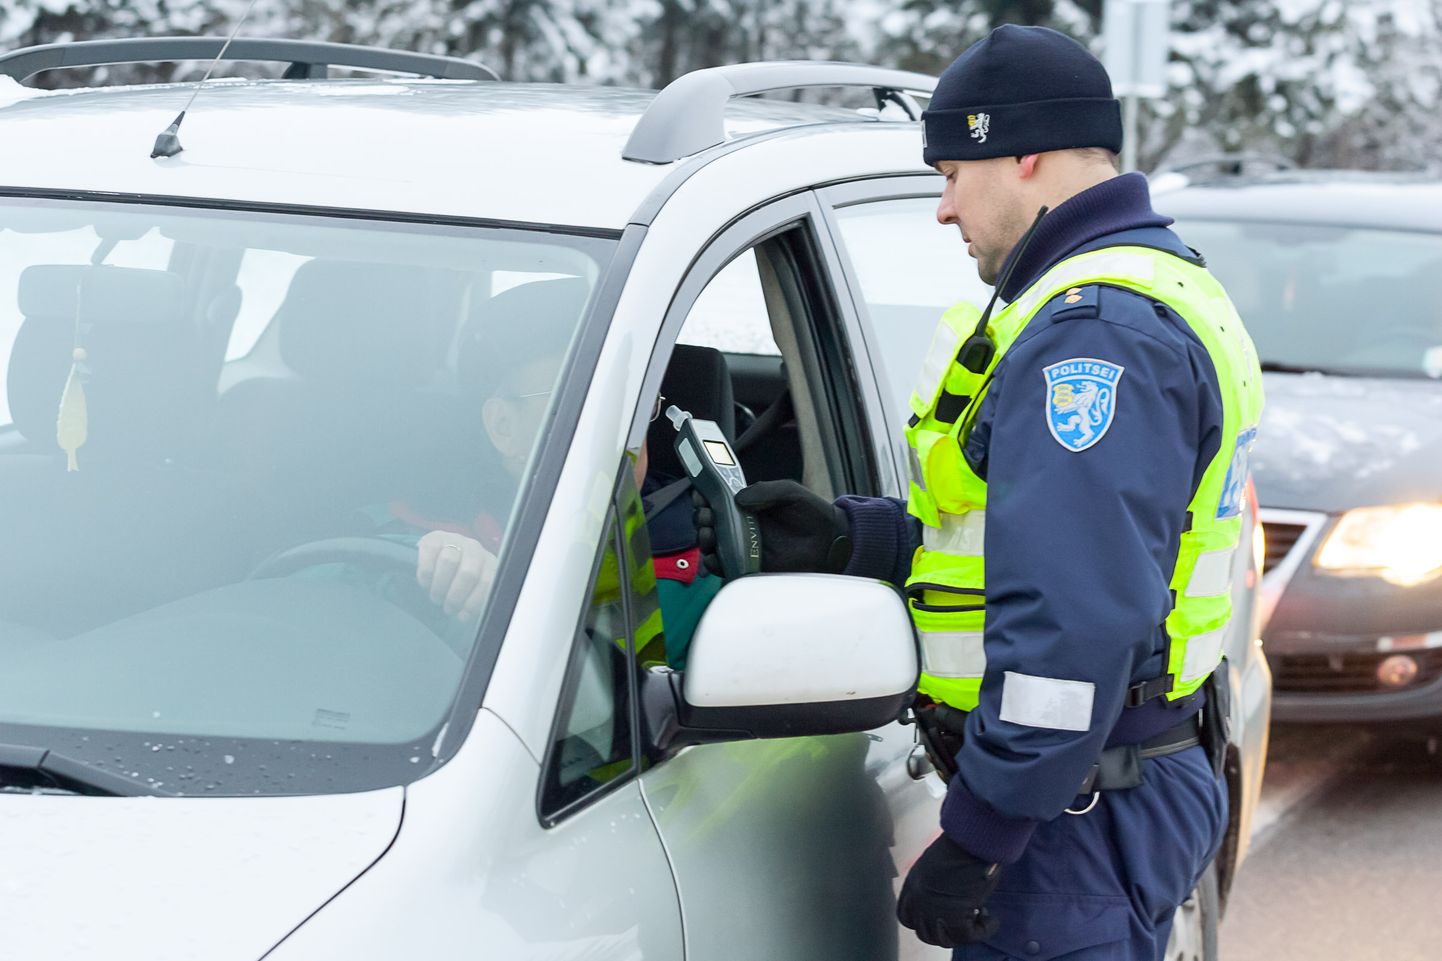 Iga päev tabavad politseinikud roolist alkoholi tarvitanud autojuhte. Foto on illustratiivne.